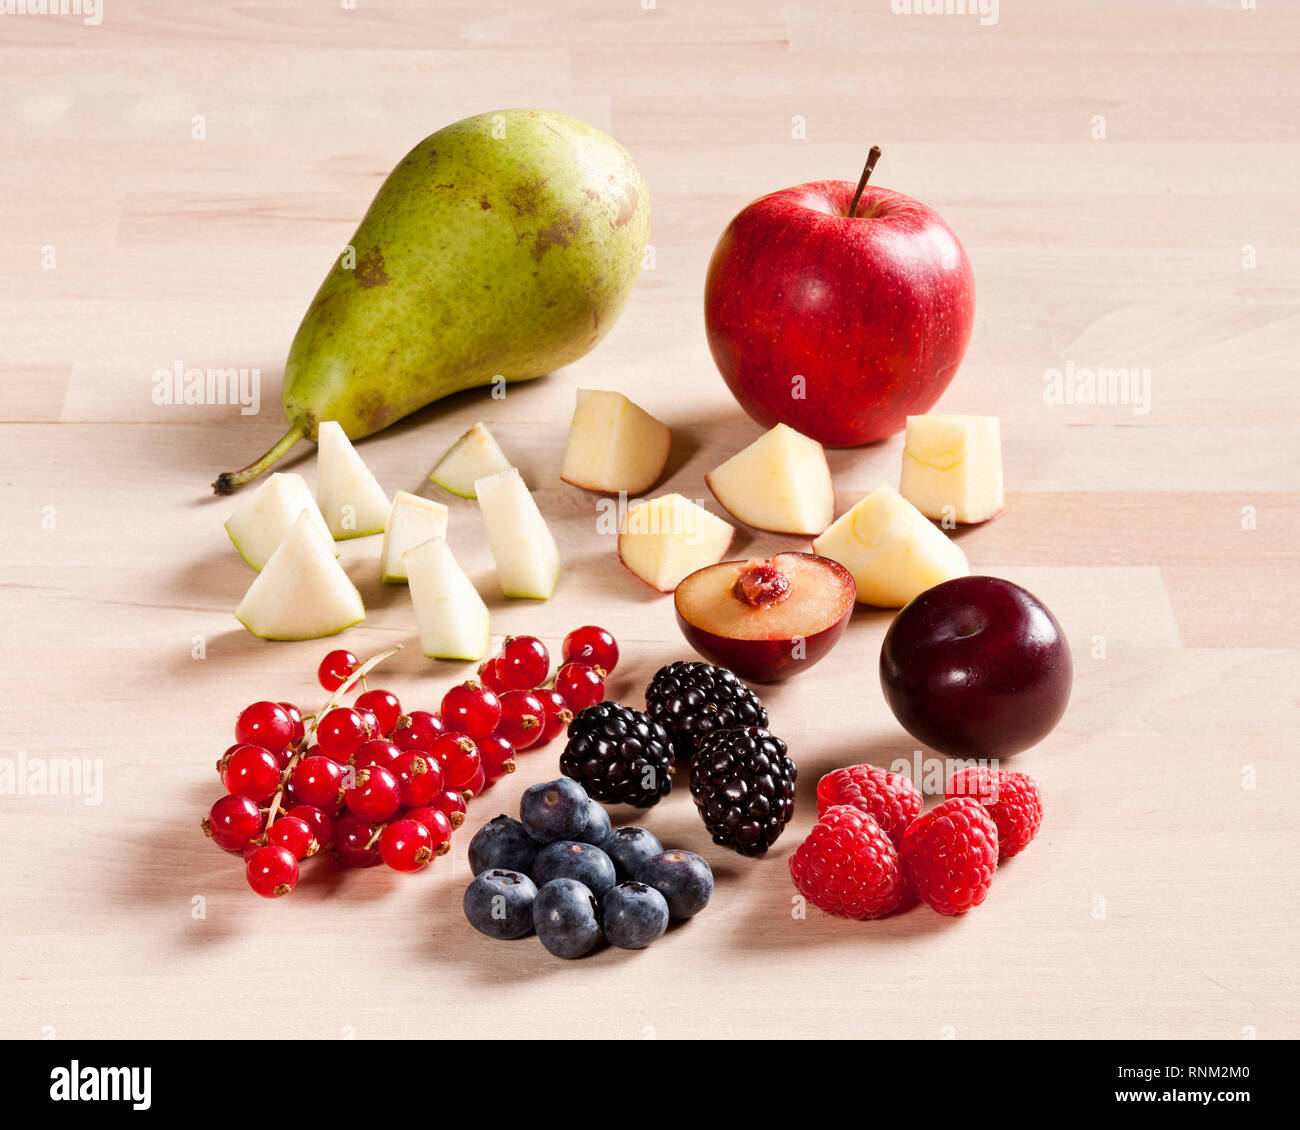 Frutta diversa: fragole, lamponi, rovi, mirtilli, mela, susina e pera. Studio Immagine. Gremany. Foto Stock